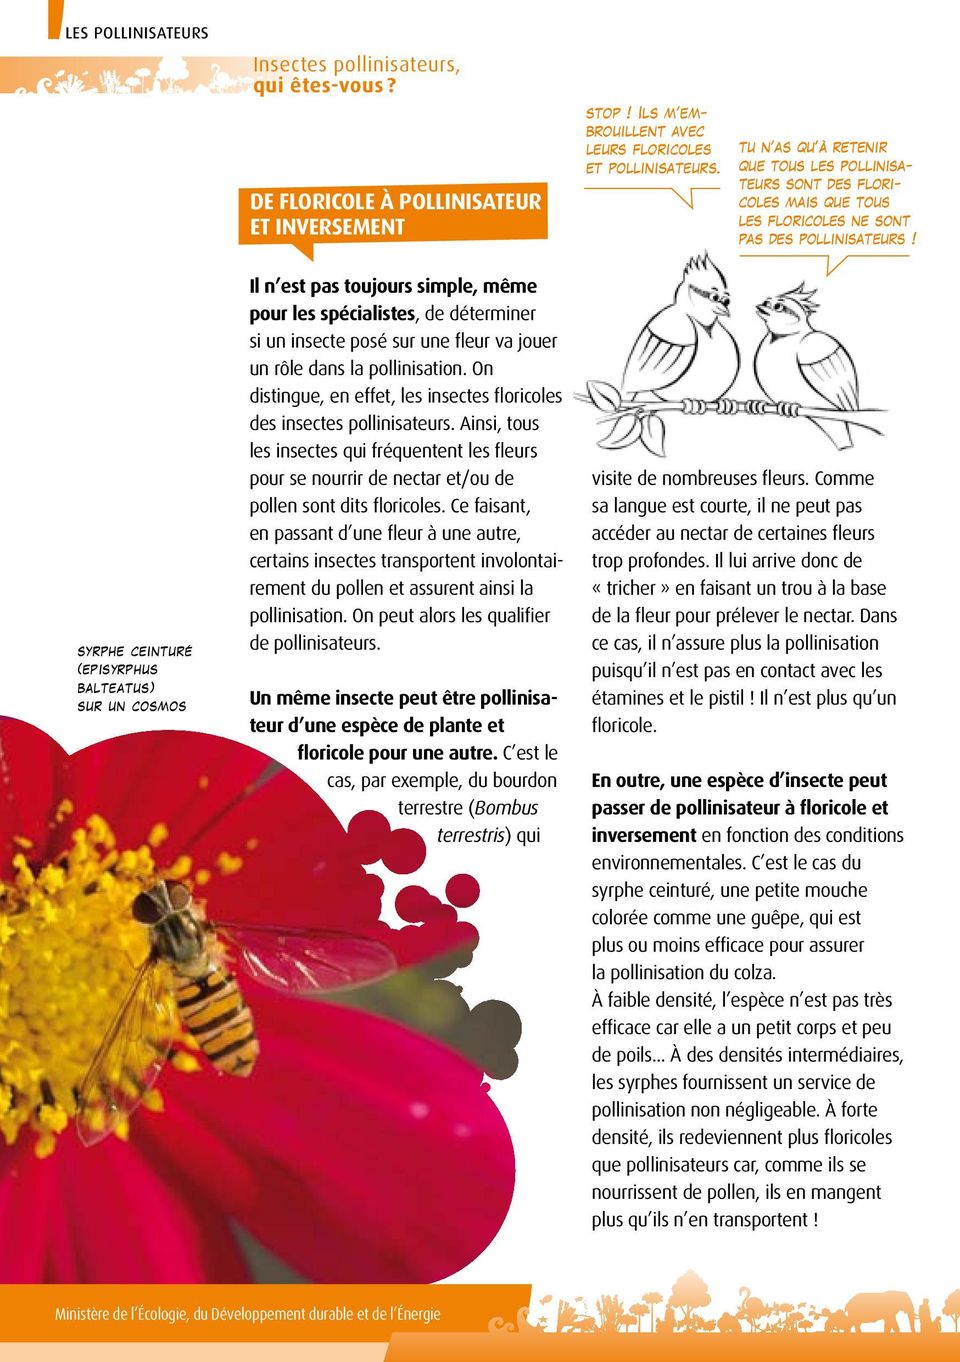 On distingue, en effet, les insectes floricoles des insectes pollinisateurs. Ainsi, tous les insectes qui fréquentent les fleurs pour se nourrir de nectar et/ou de pollen sont dits floricoles.